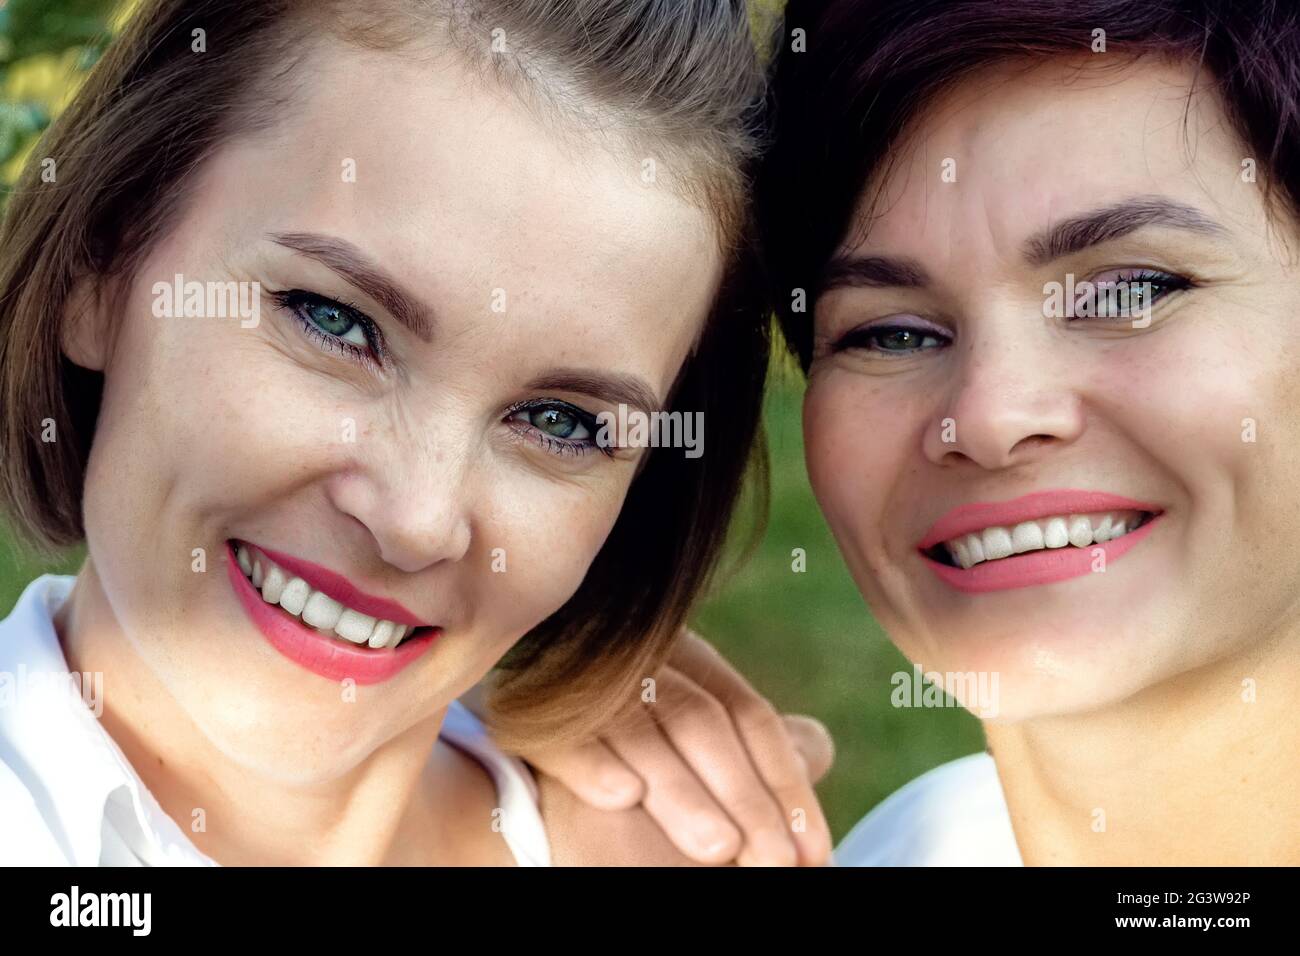 Amitié des femmes. Deux belles femmes d'apparence caucasienne sourient. Portrait en gros plan. Banque D'Images